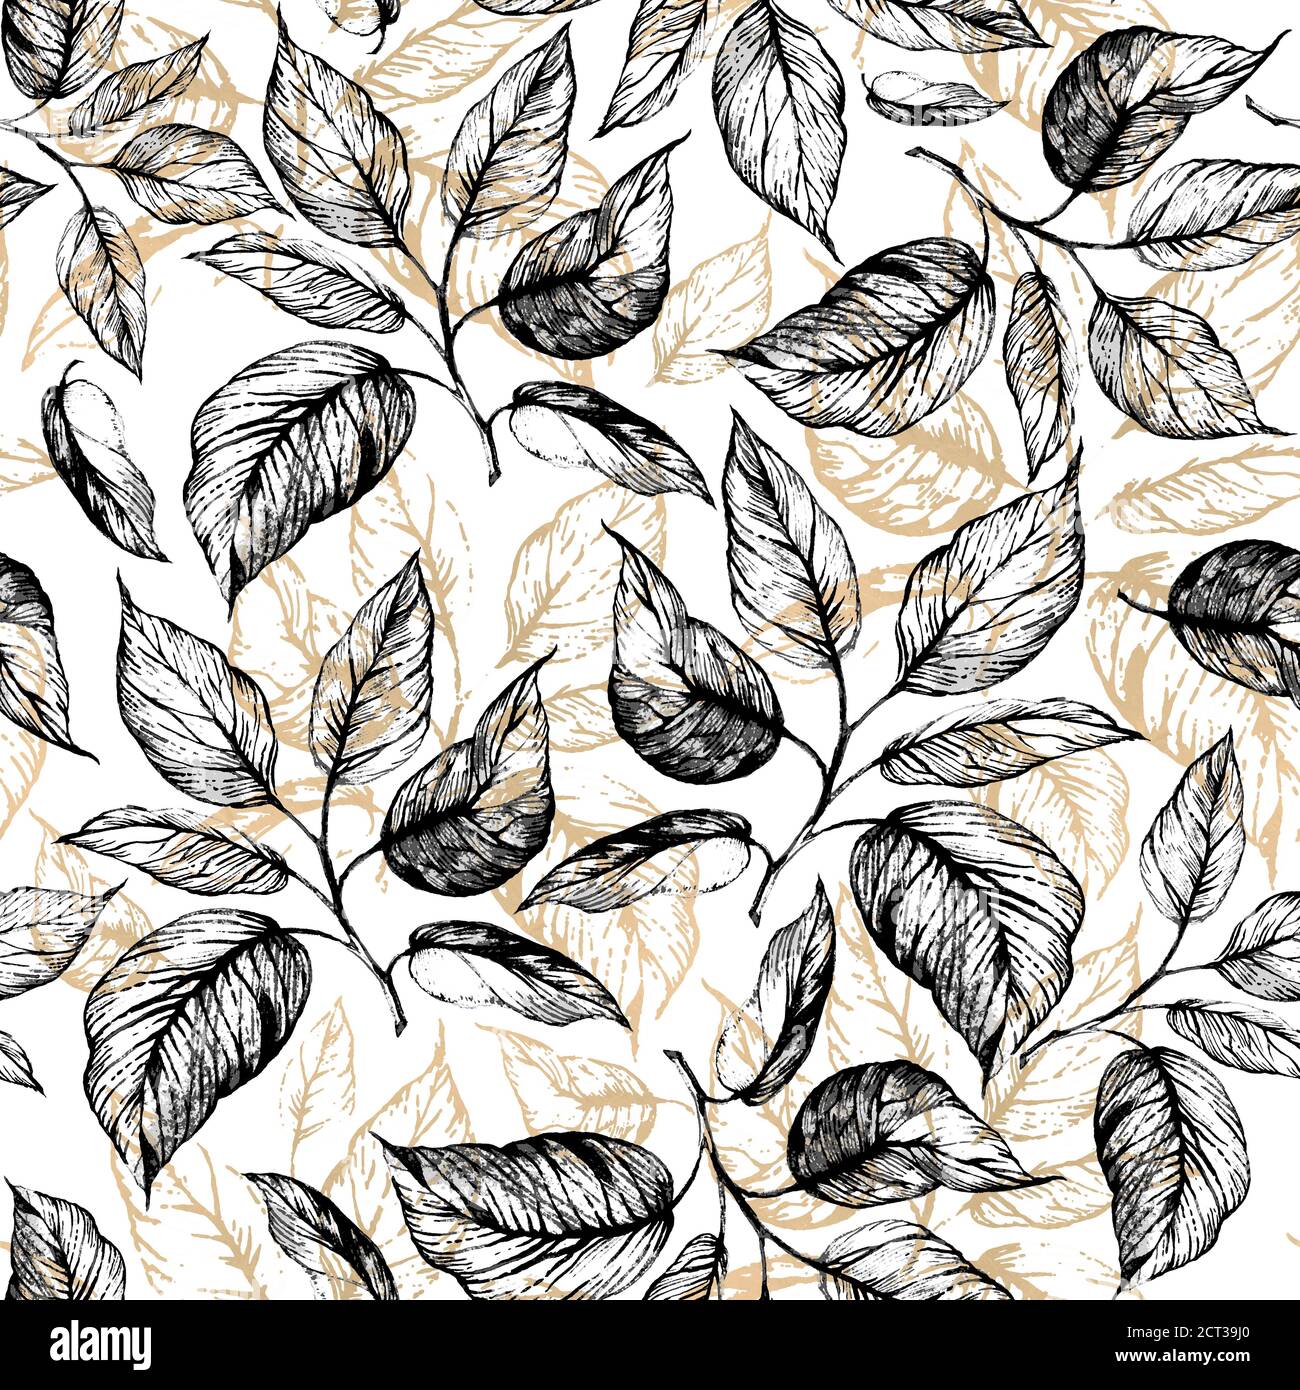 Patrón sin costuras: Ramita dibujada a mano con hojas en escala gris y contorno de hojas de lámina dorada sobre blanco. Diseño para papel pintado, textil, tela, sujetalibros, envoltura. Foto de stock